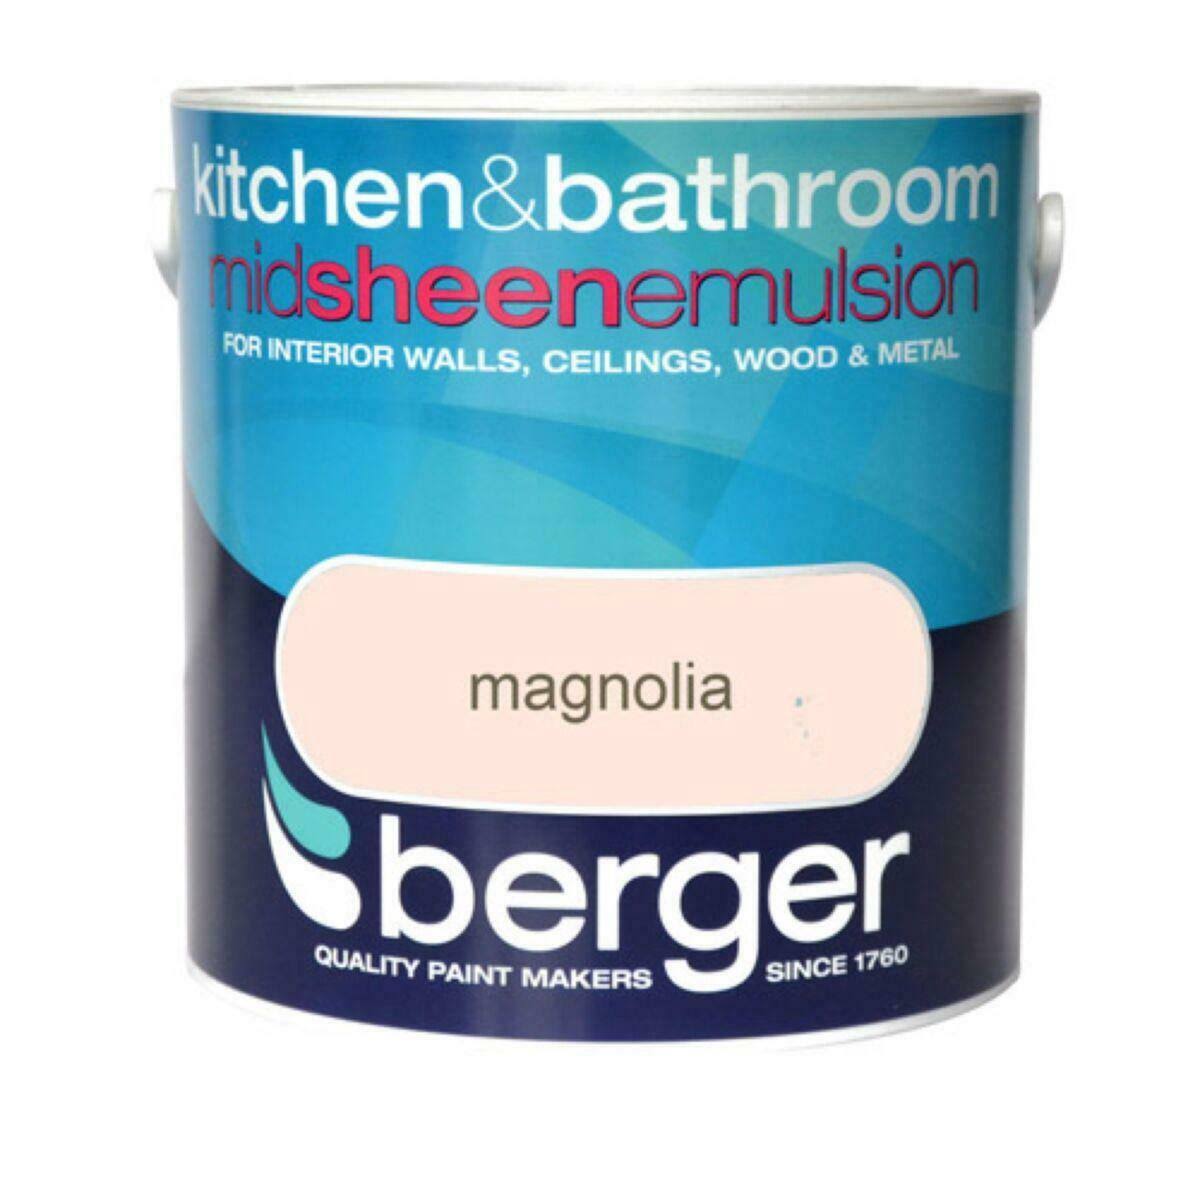 Berger Kitchen & Bathroom Magnolia 2.5L